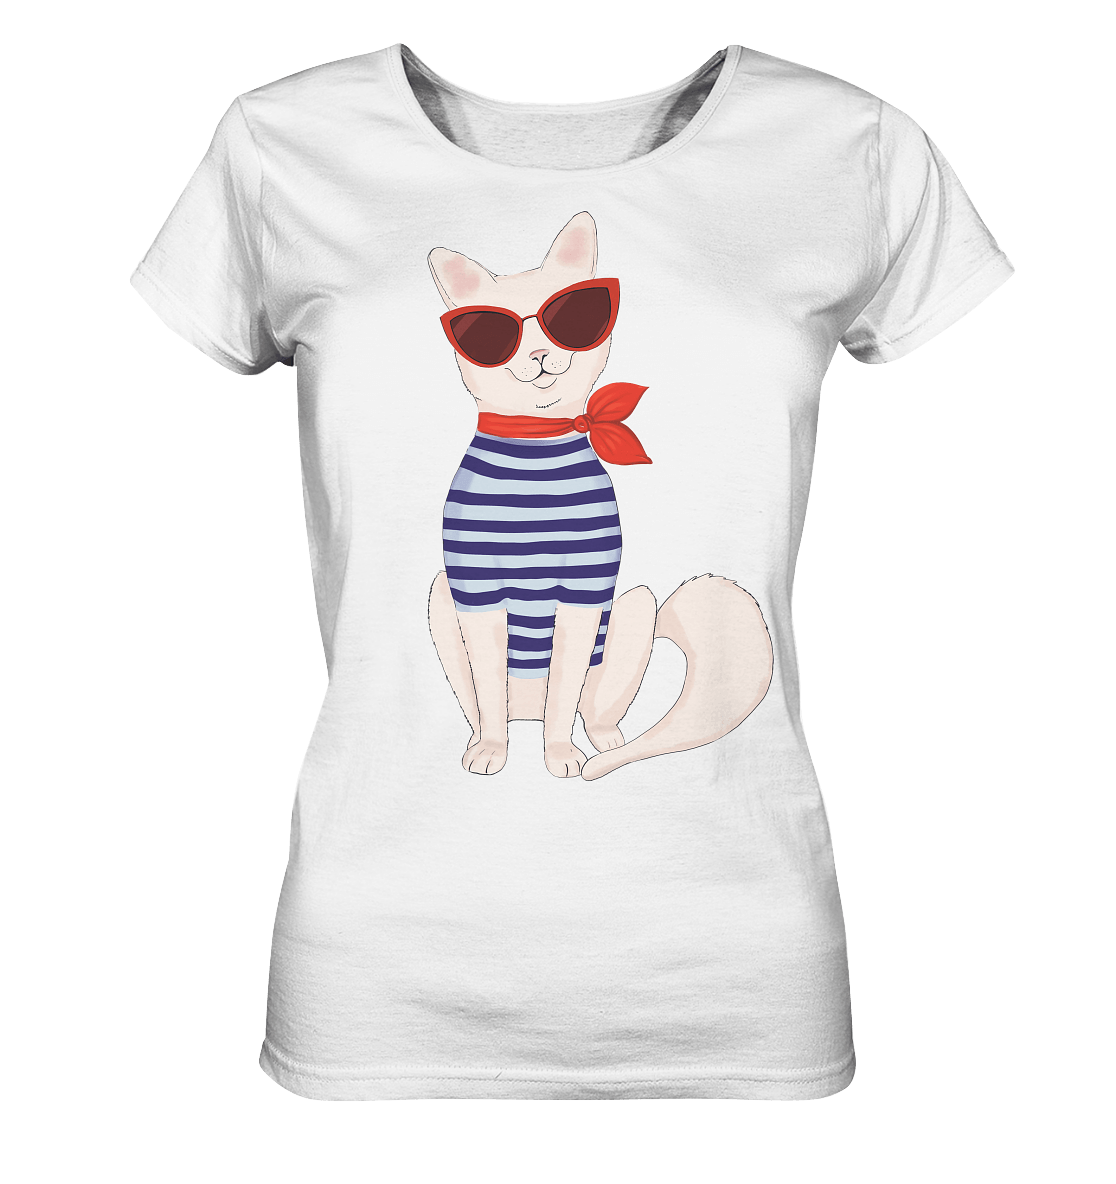 Katen Motive Damen T-Shirt Fashion Katze mit roter Sonnebrille von Bloominic in weiß